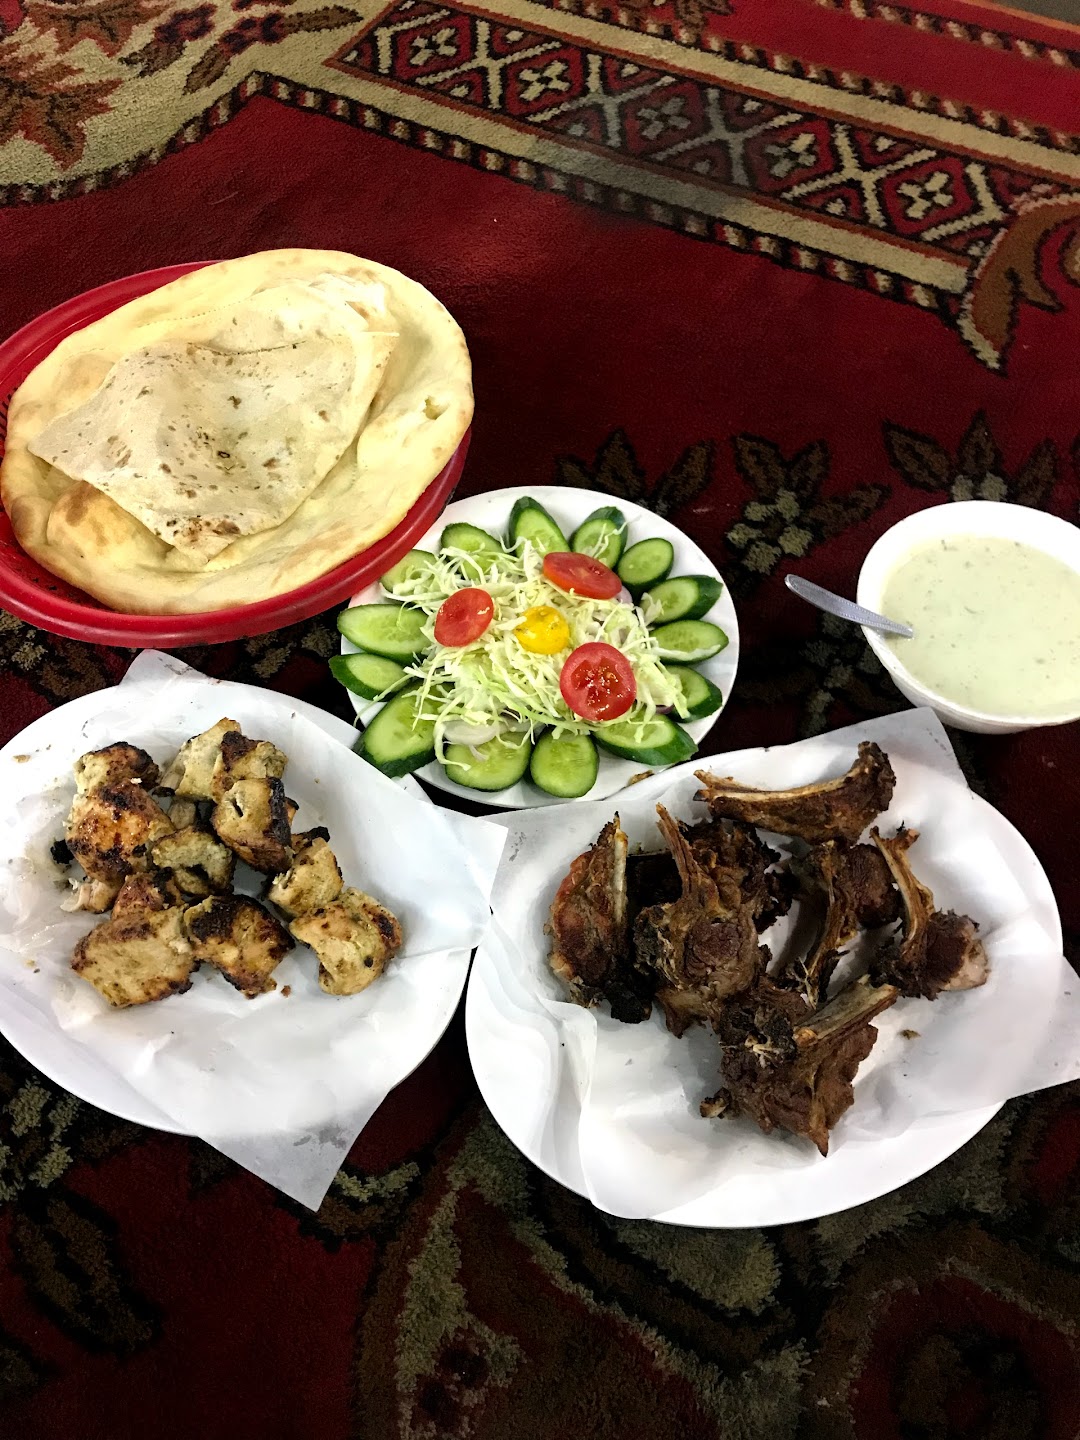 Anwaar Baloch Restaurant